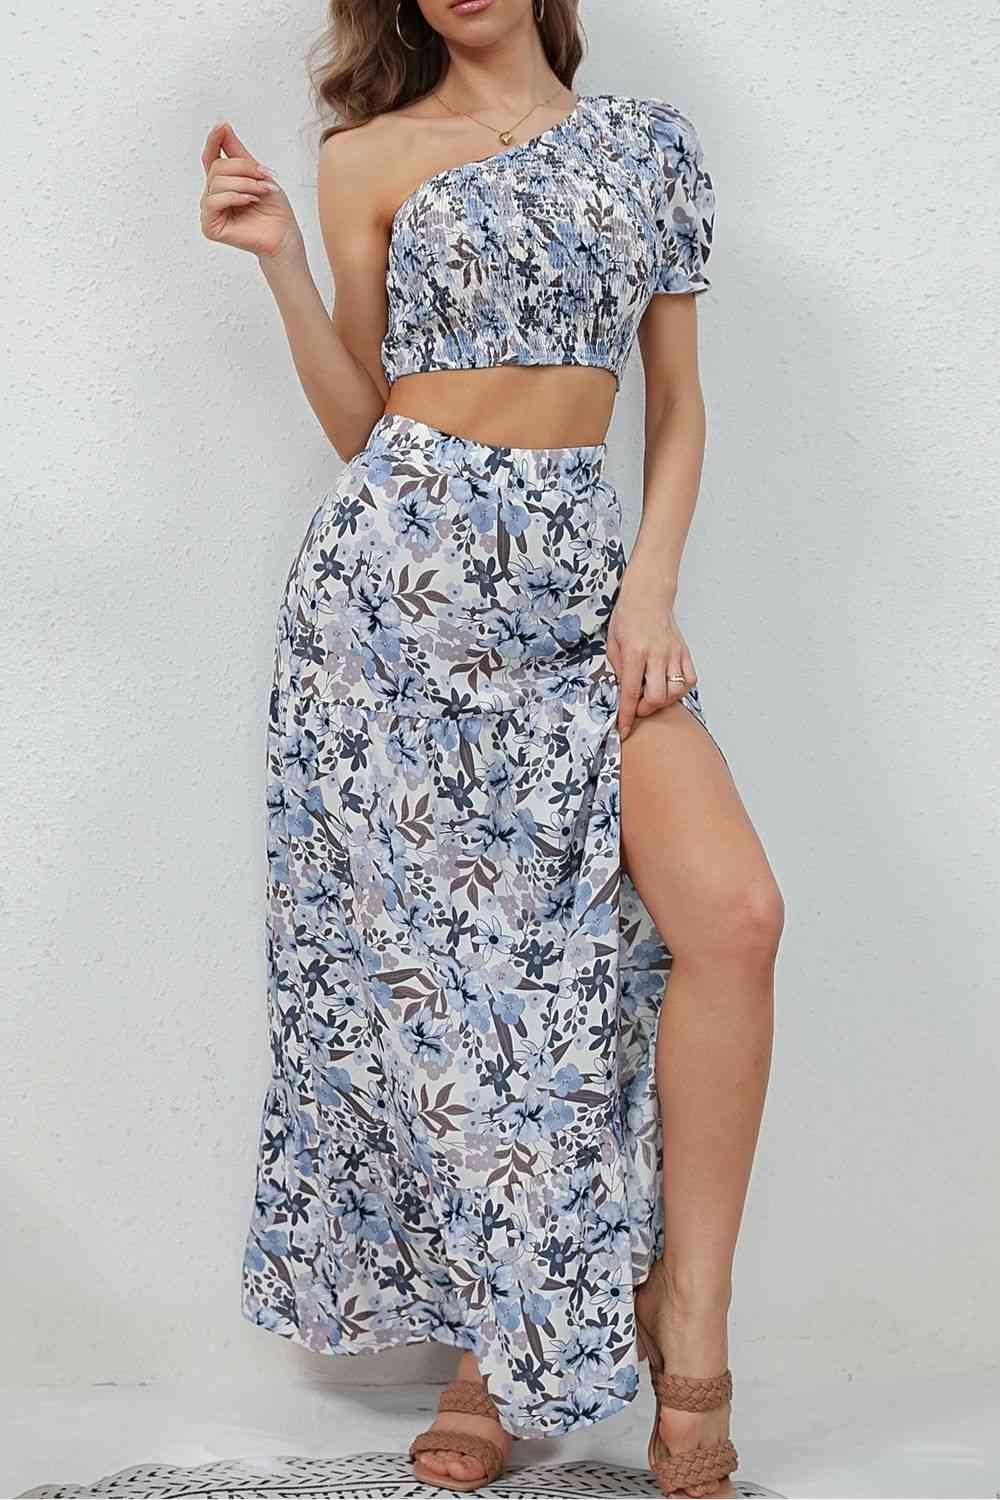 Tropic Sweetie Floral Maxi Skirt And Crop Top Set - MXSTUDIO.COM